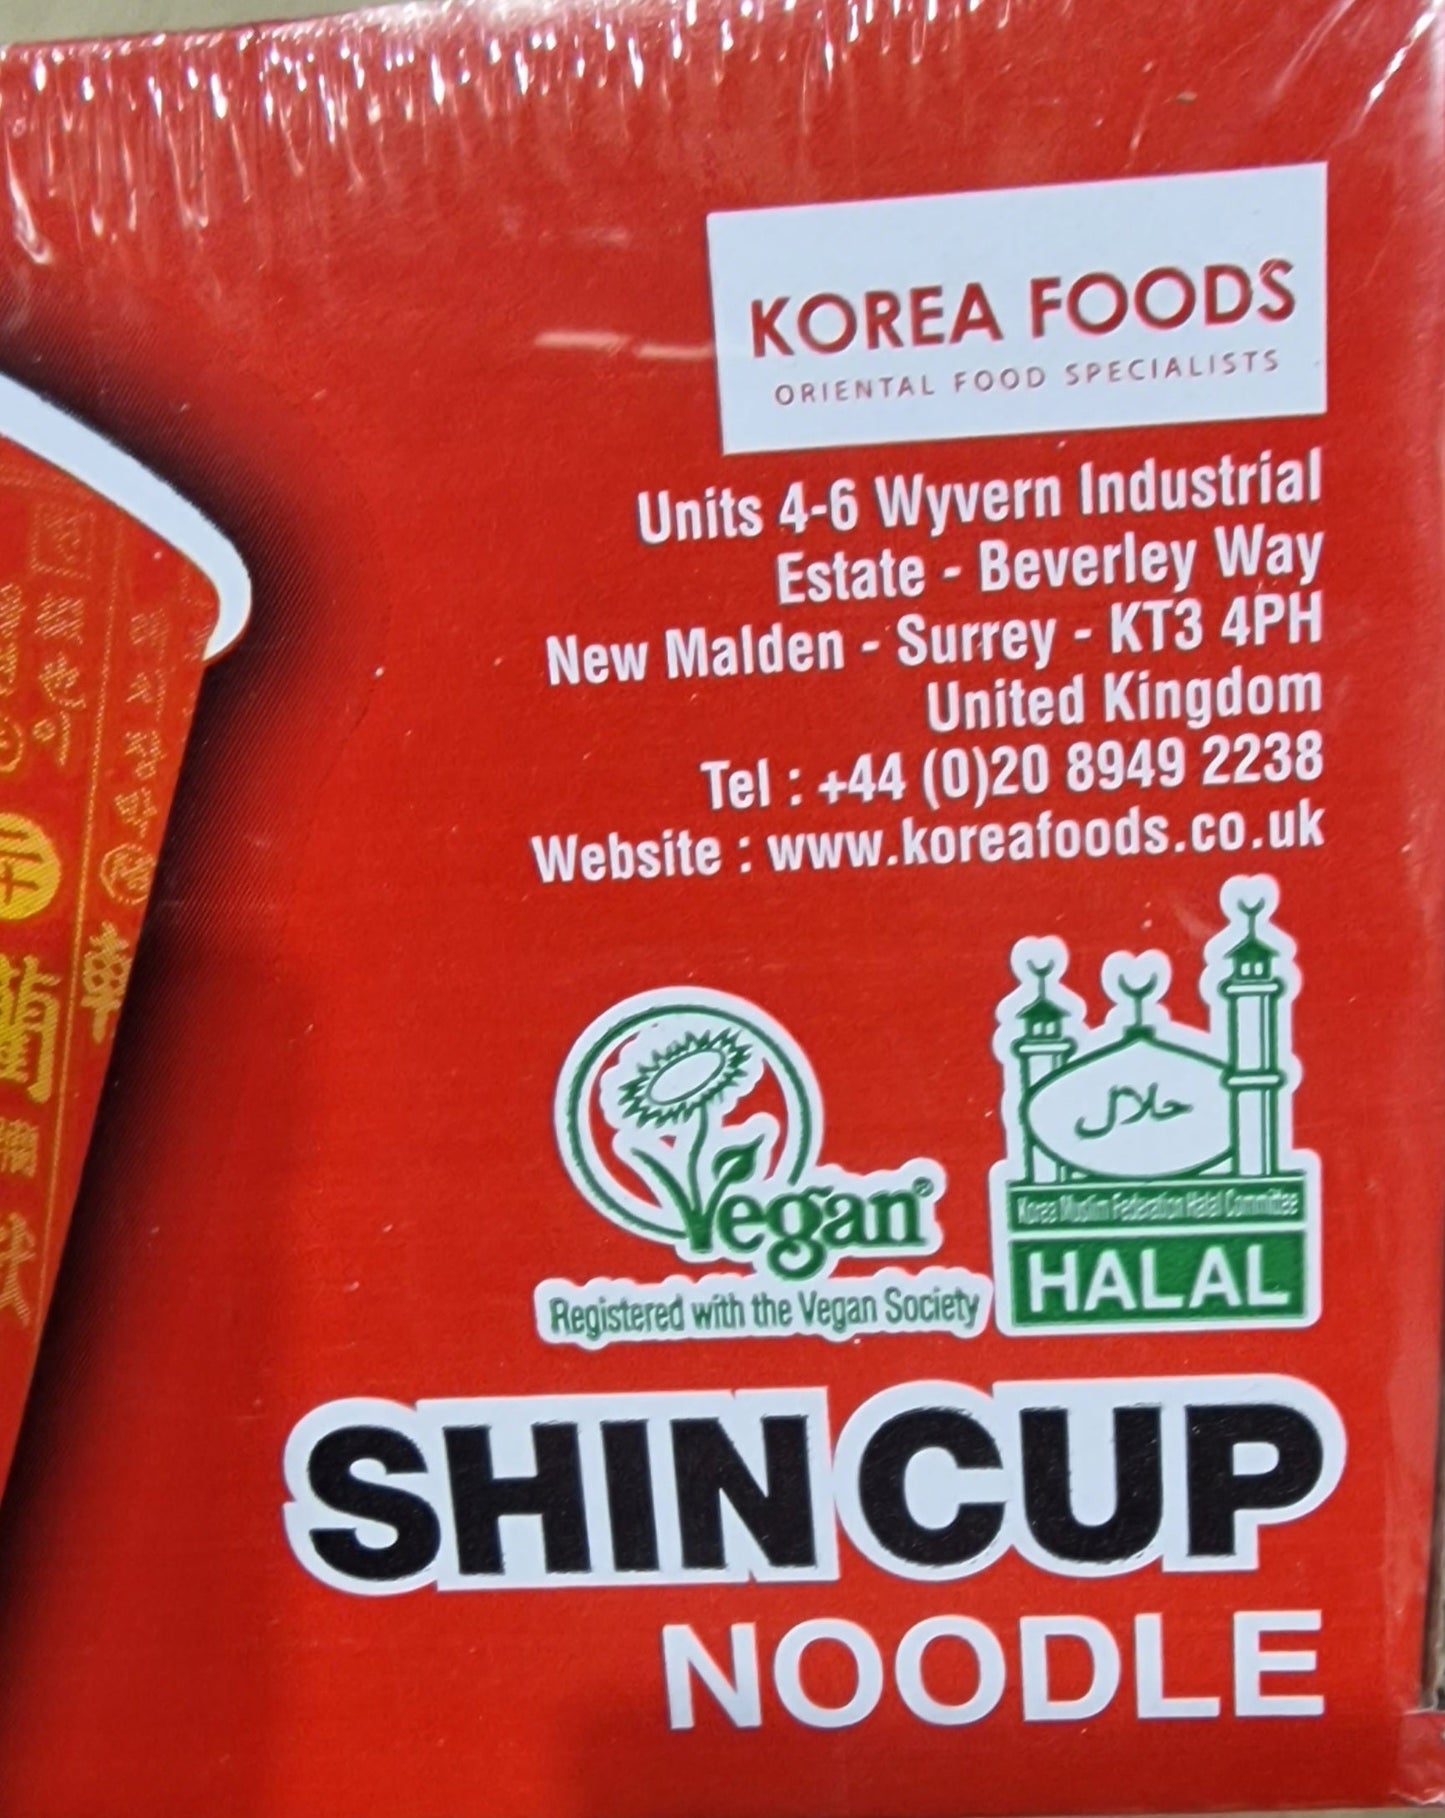 Nongshim Hot & Spicy Cup Noodles 6x68g - Halal & Vegan